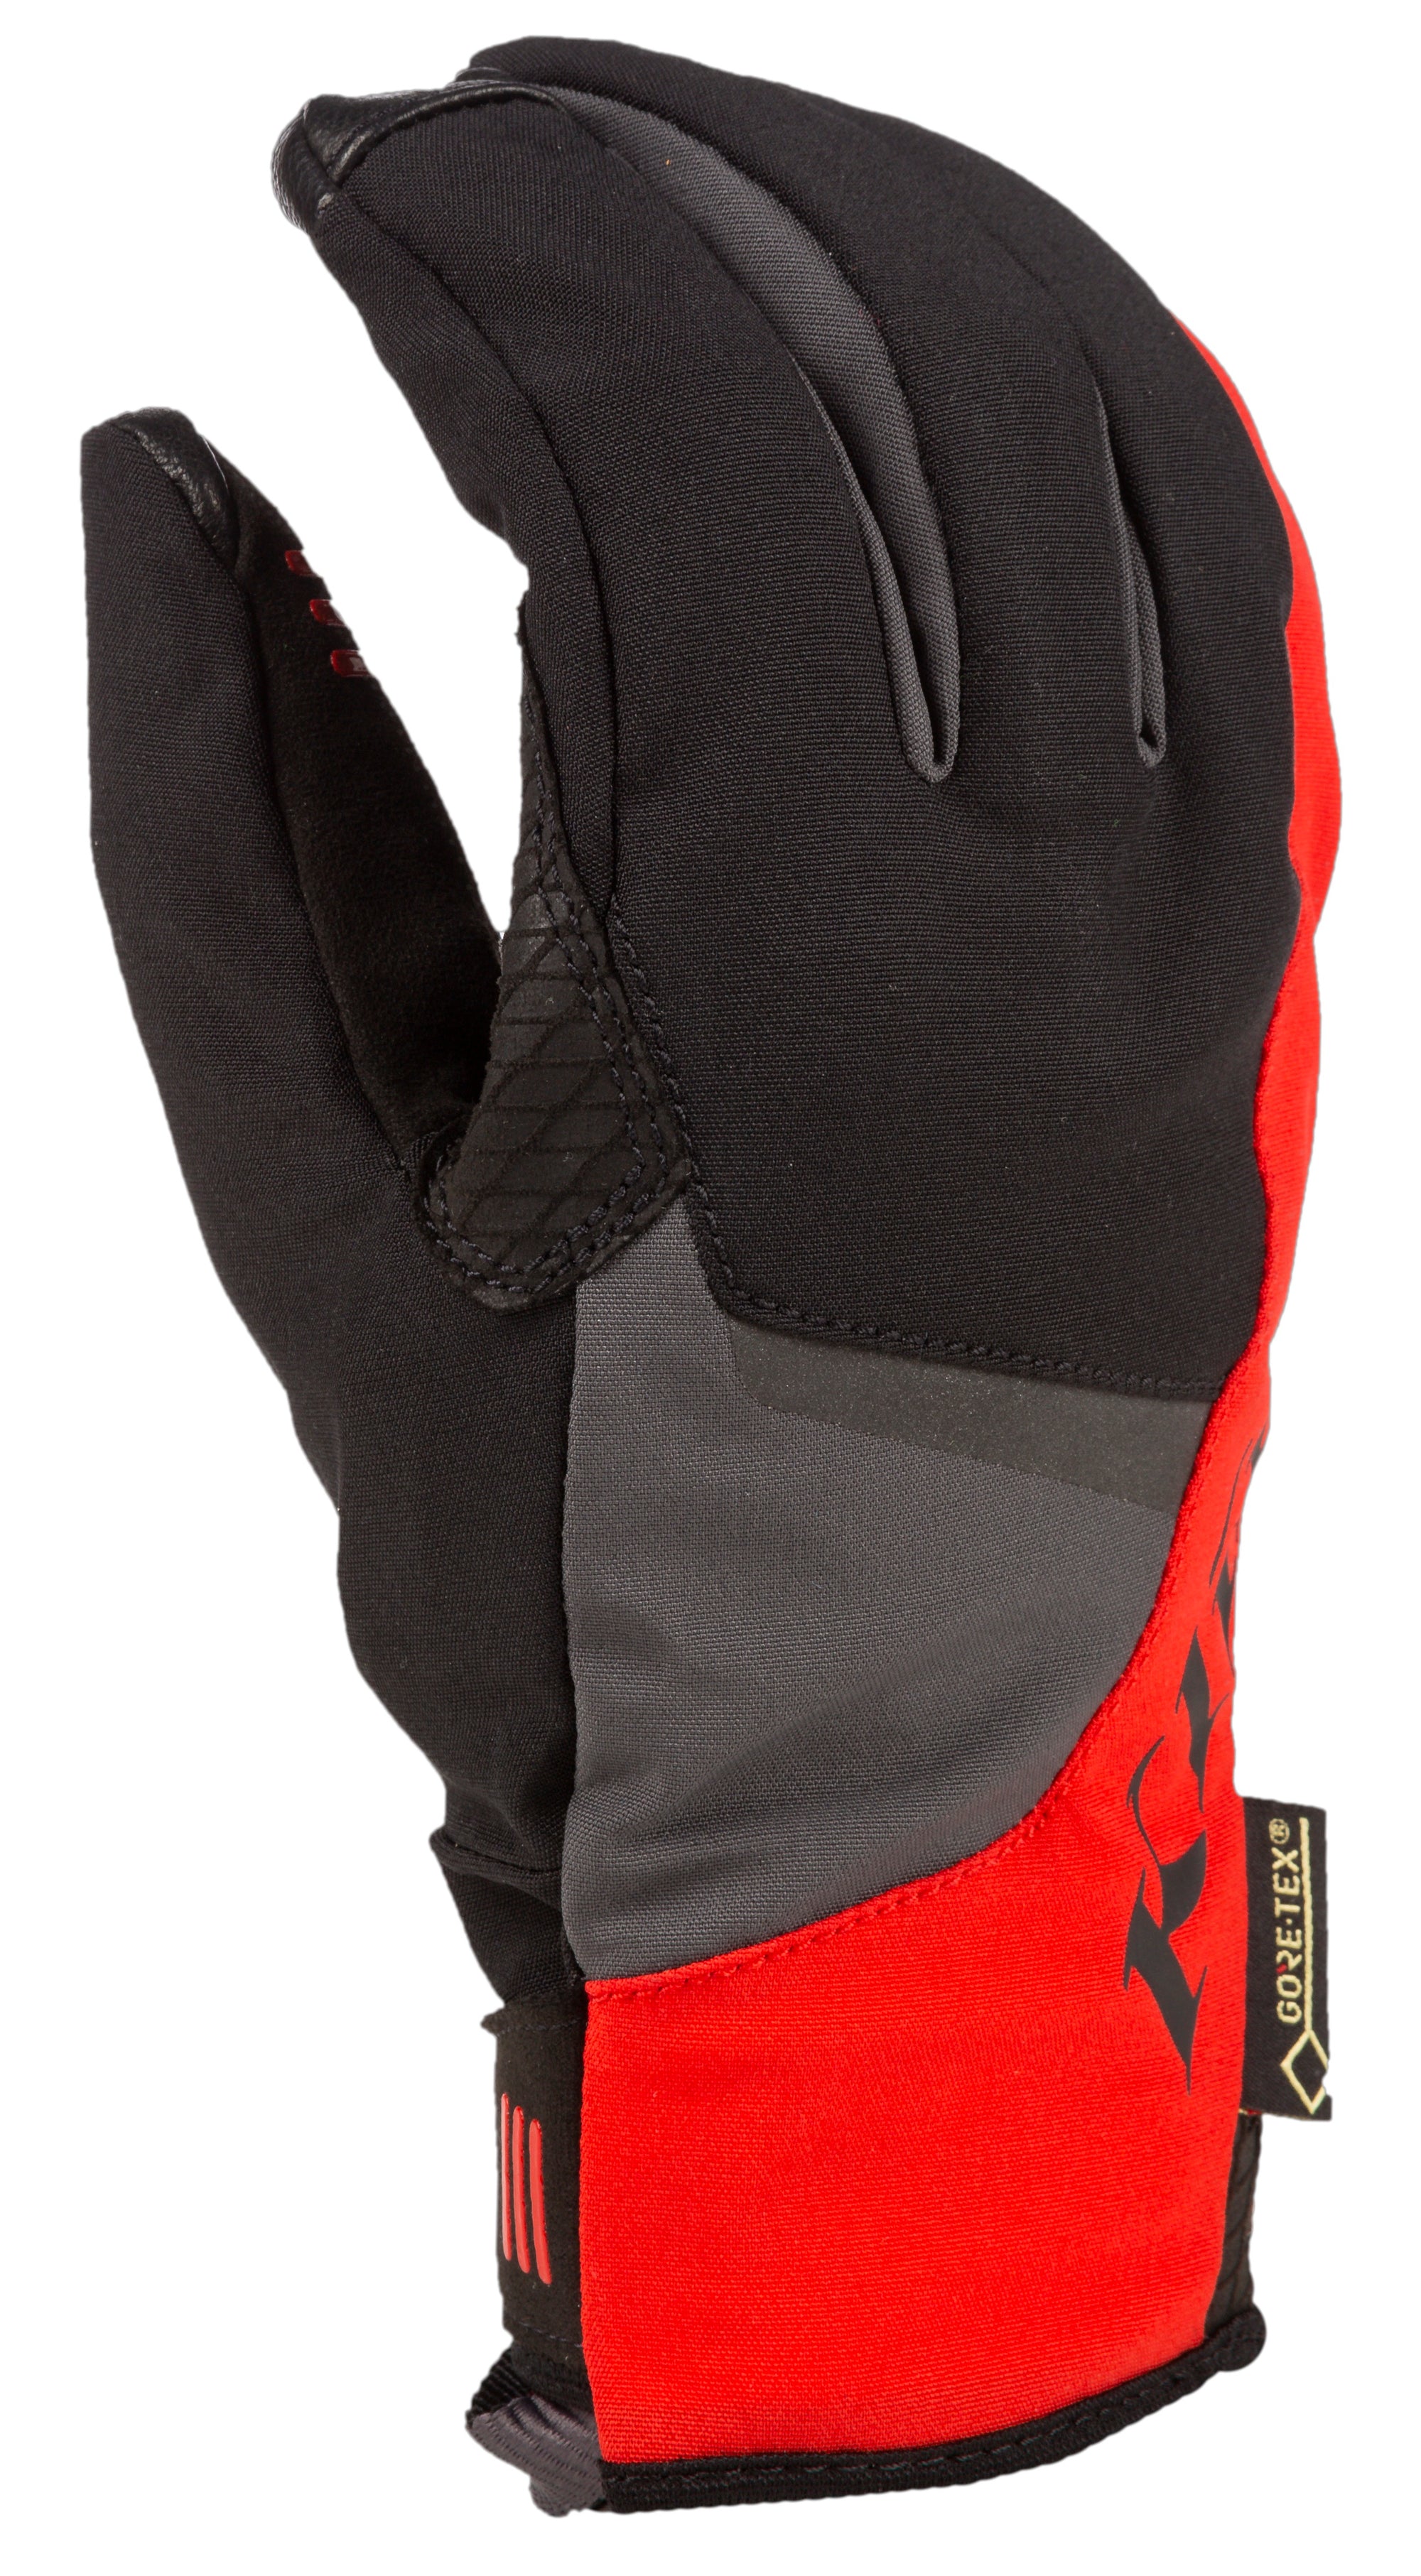 KLIM Inversion GTX Glove - 3159-000 - The Parts Lodge